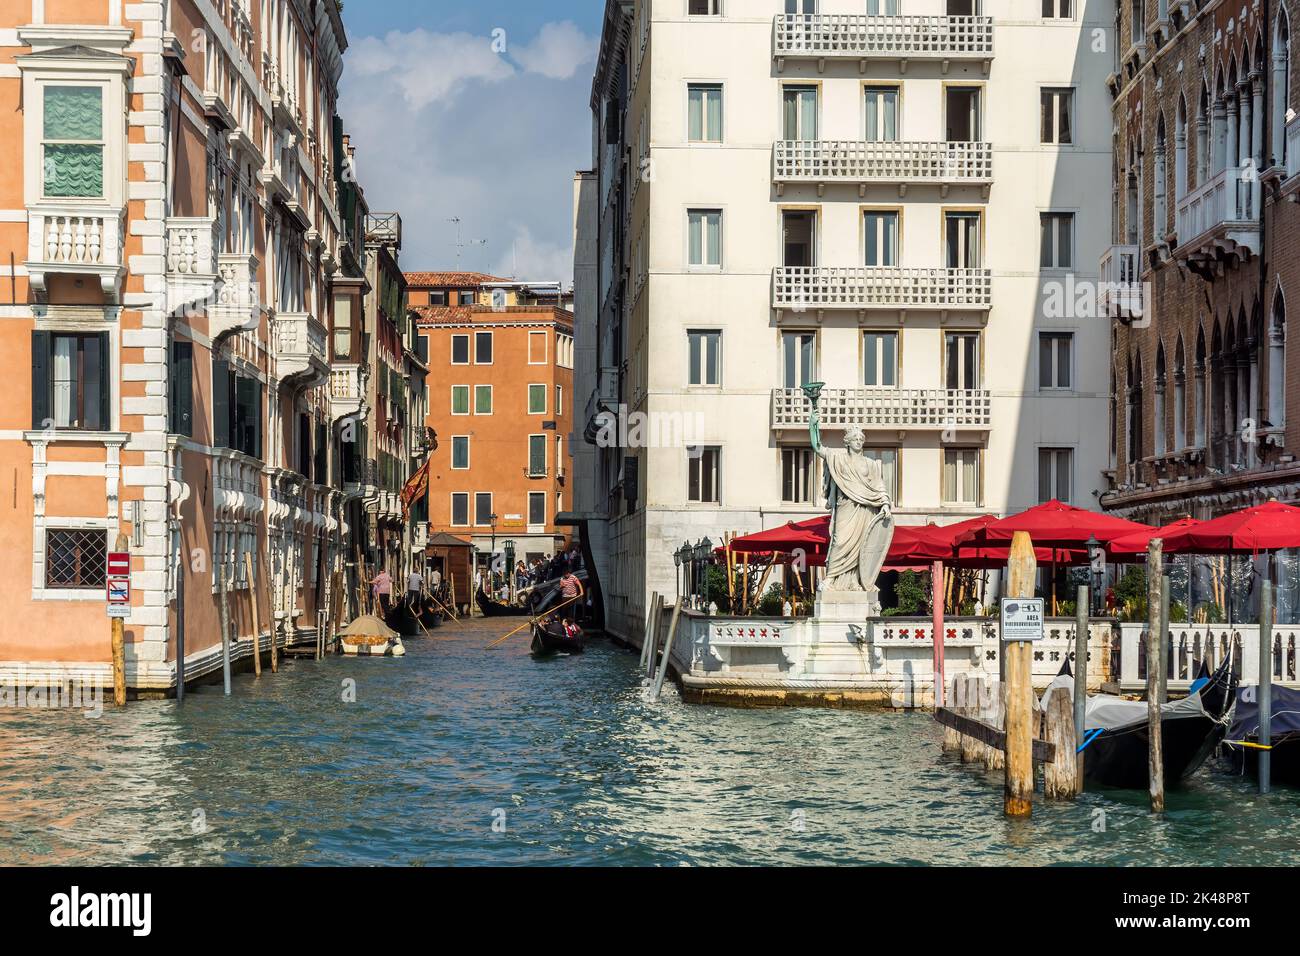 VENISE, ITALIE - OCTOBRE 12 : scène typique des canaux à Venise sur 12 octobre 2014. Personnes non identifiées Banque D'Images